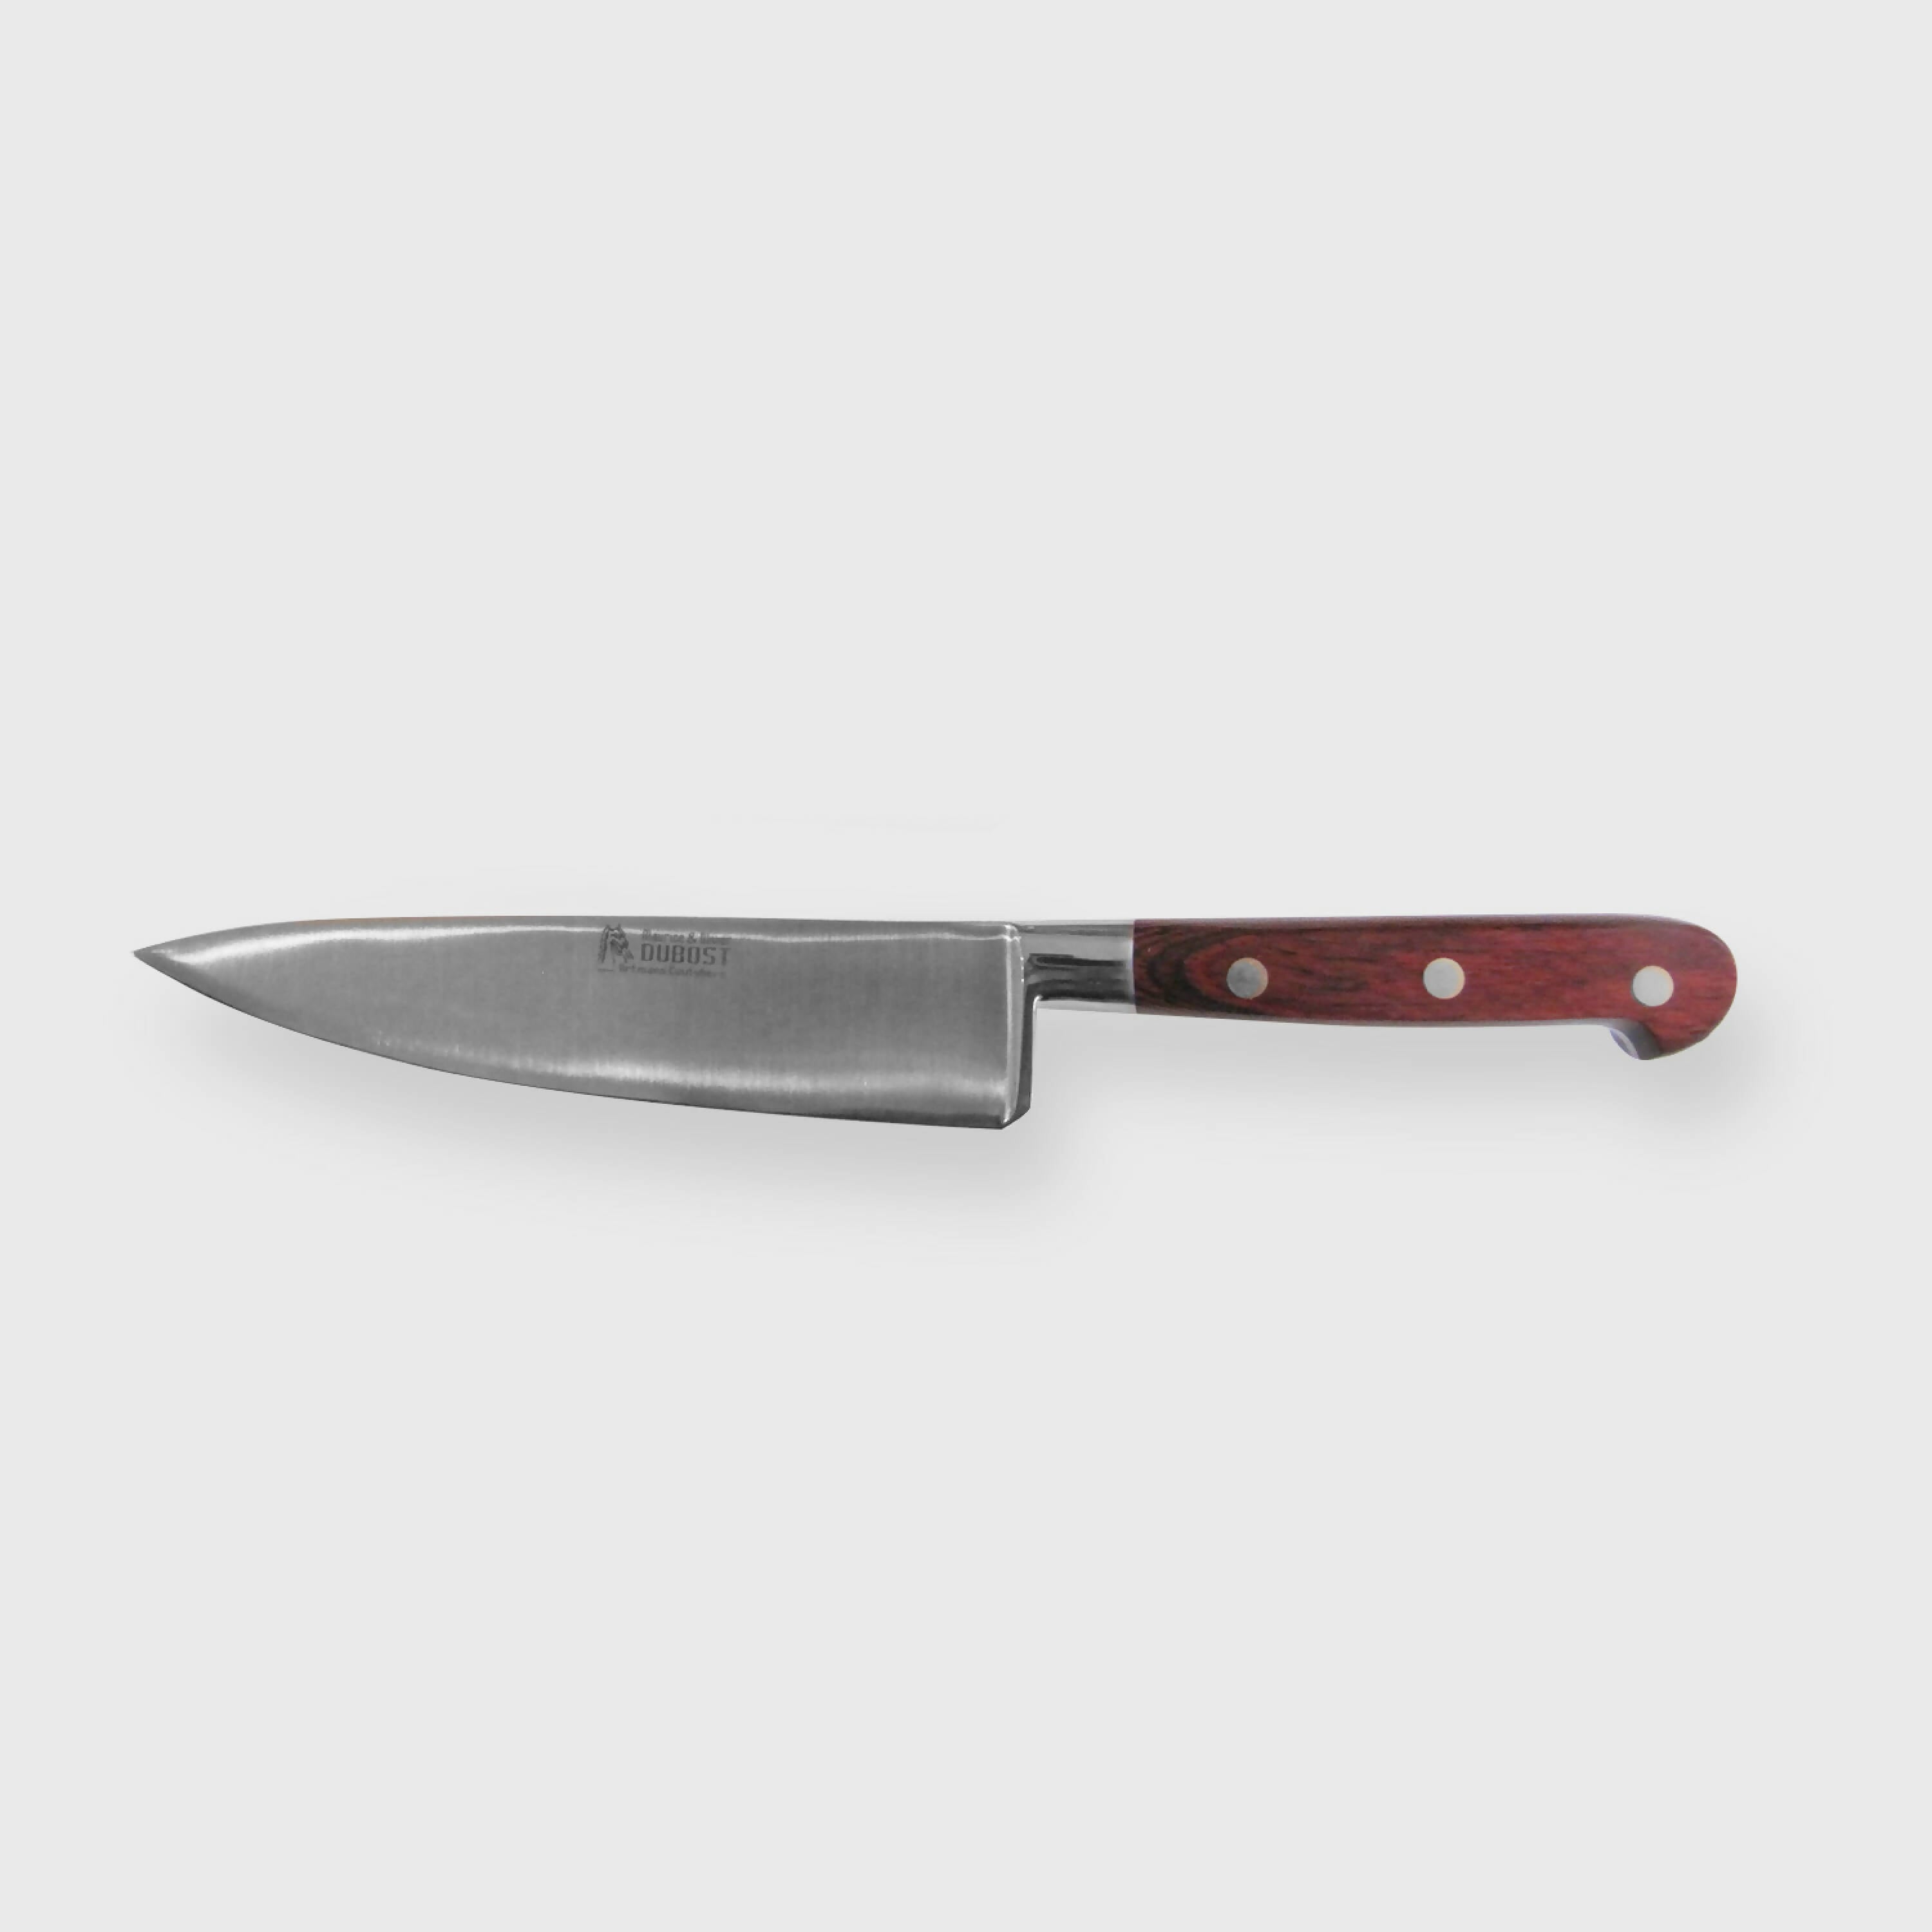 Couteau de cuisine forgé 20 cm en bois d